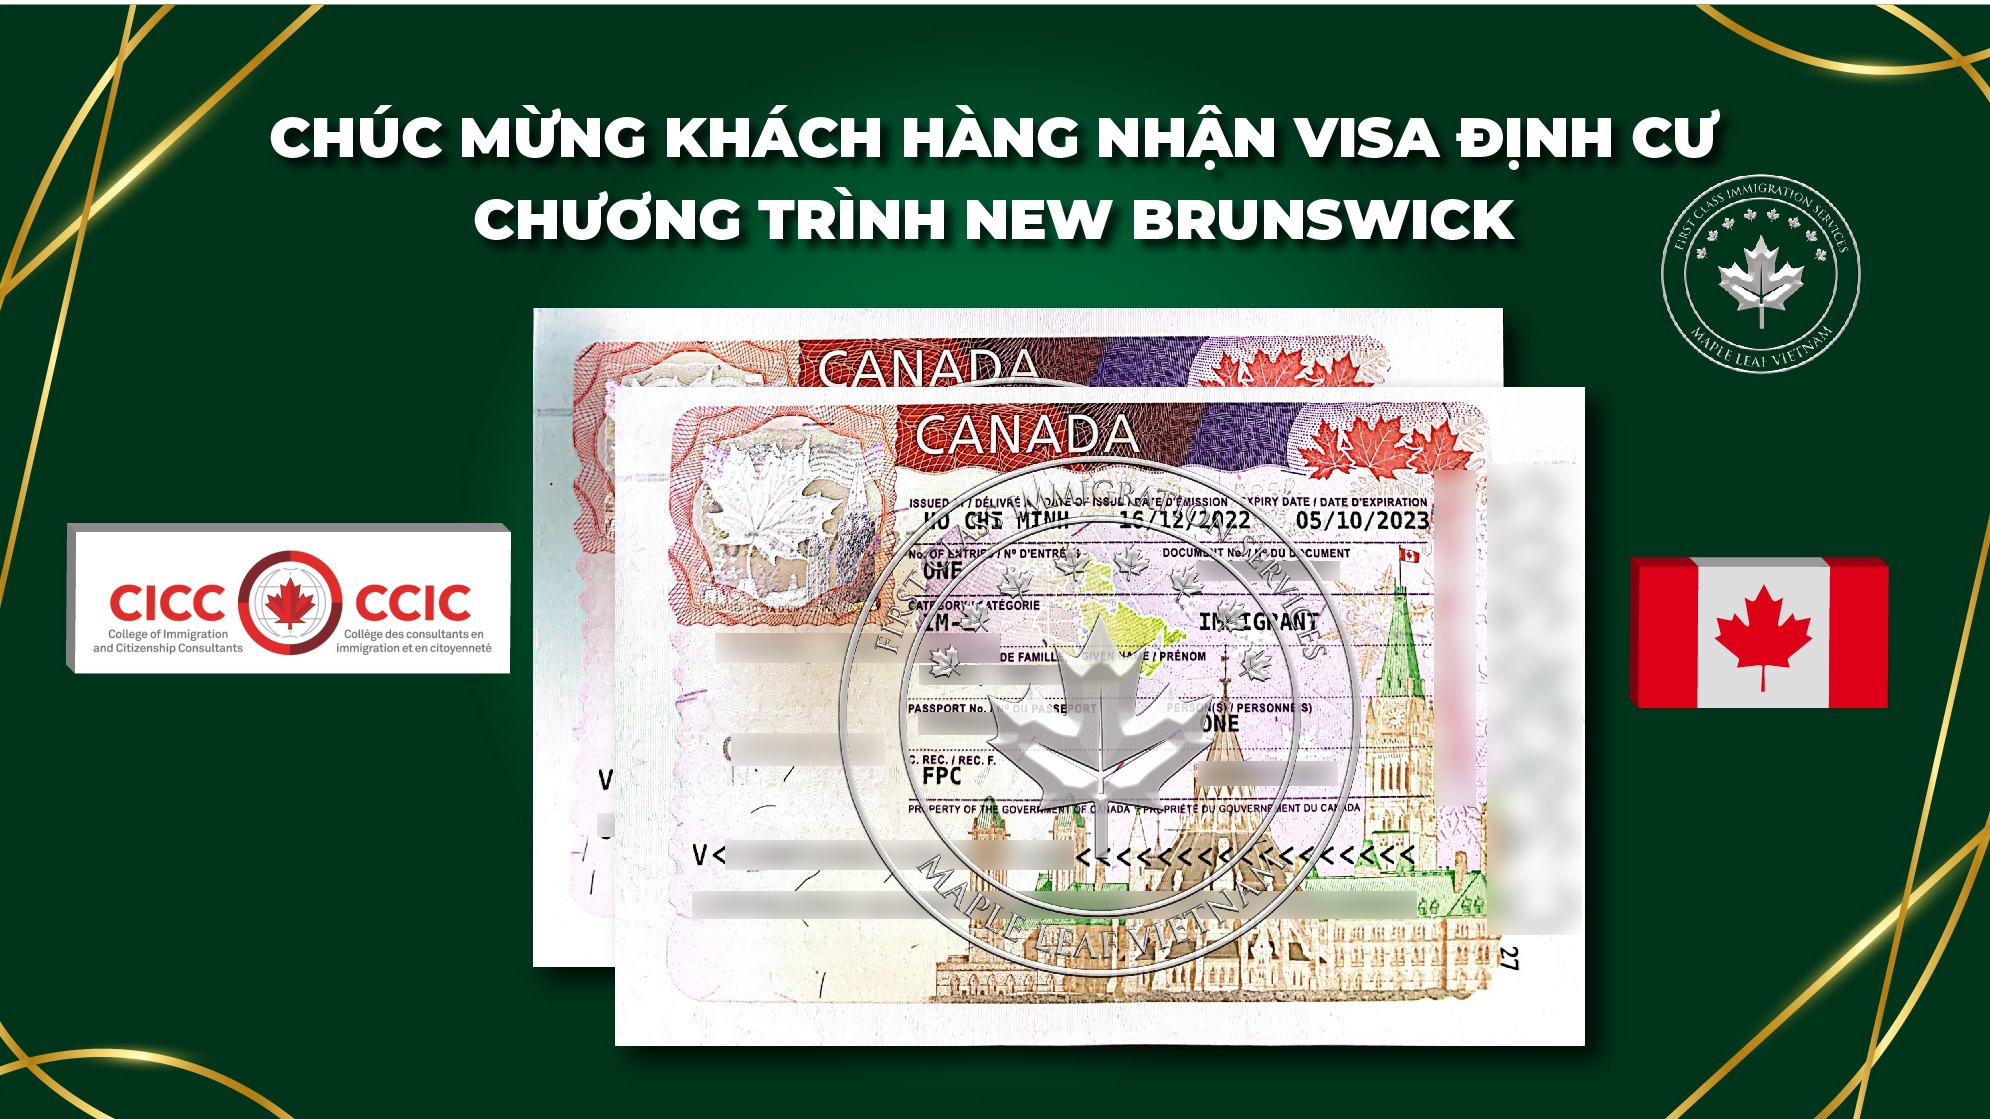 chuc-mung-khach-hang-maple-leaf-vietnam-nhan-visa-dinh-cu-new-brunswick